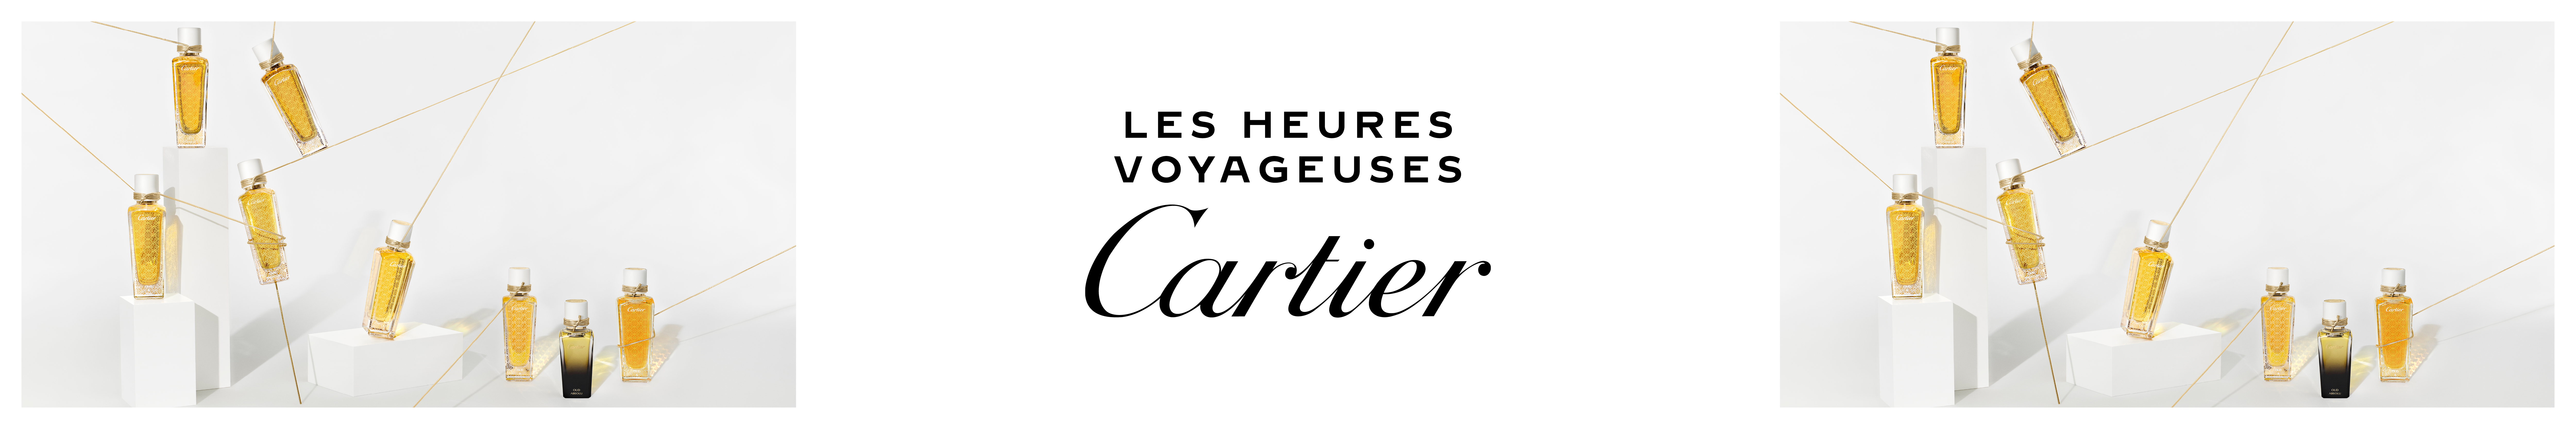 WK11_24-PLPBanner-Cartier